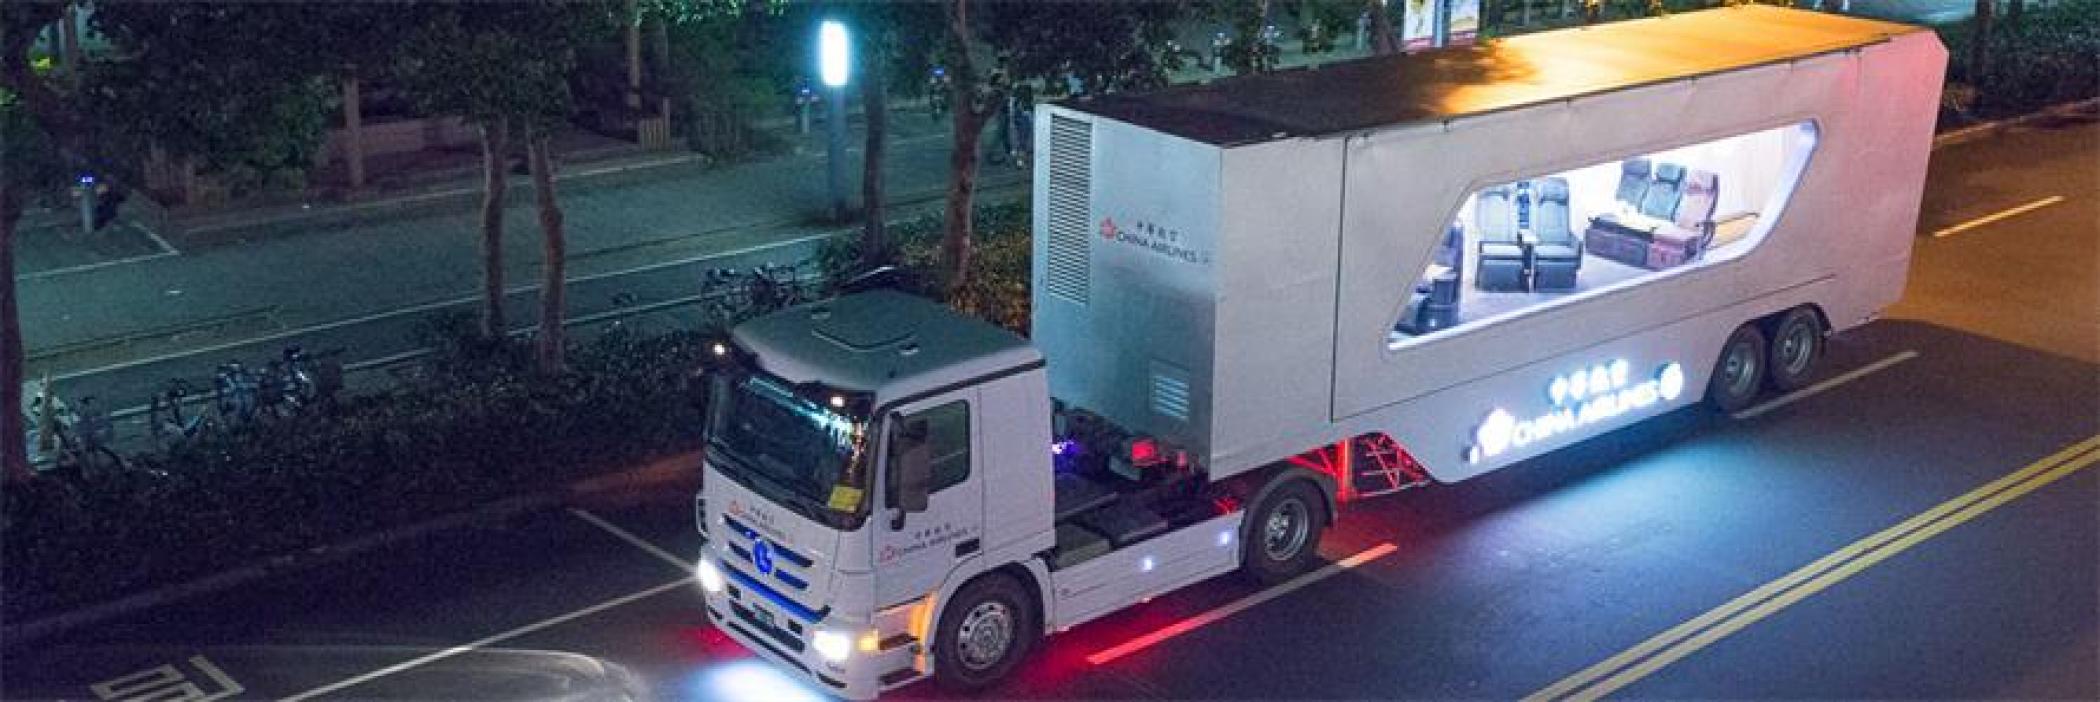 中国台湾中华航空改装巡回卡车体验式营销活动